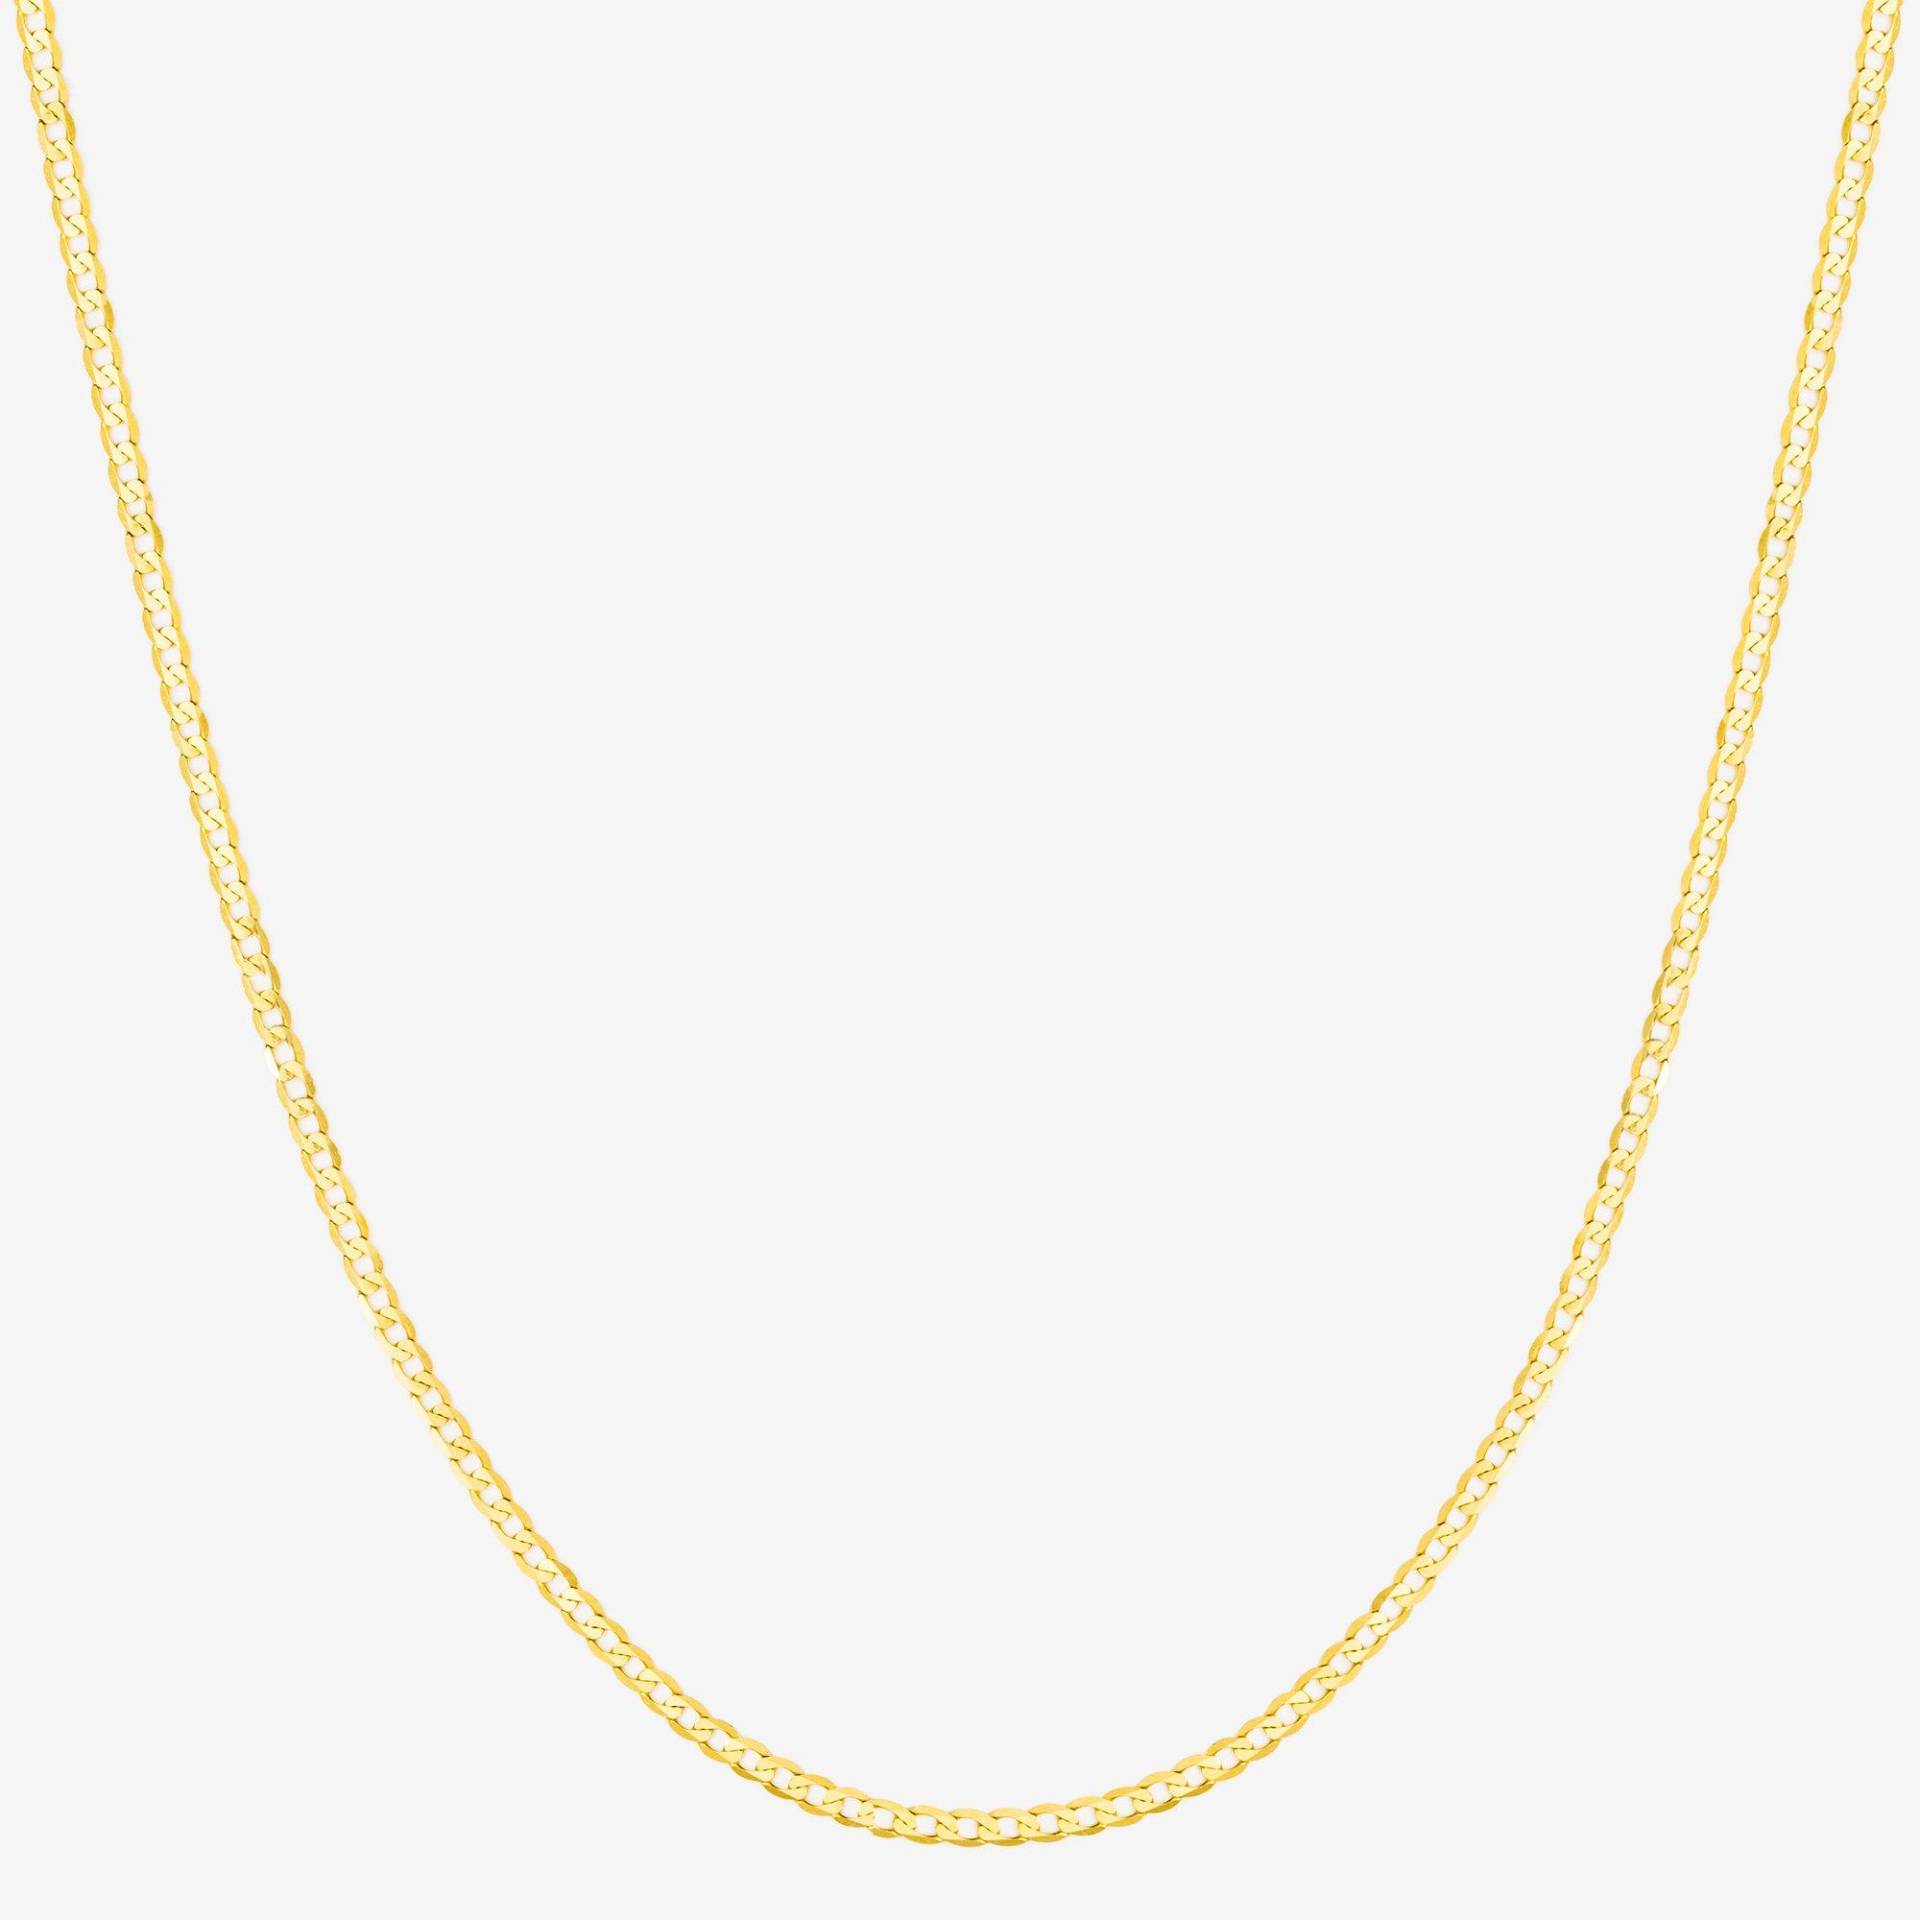 Halskette Damen Gelbgold 40cm von L' Atelier Gold 18 Karat by Manor